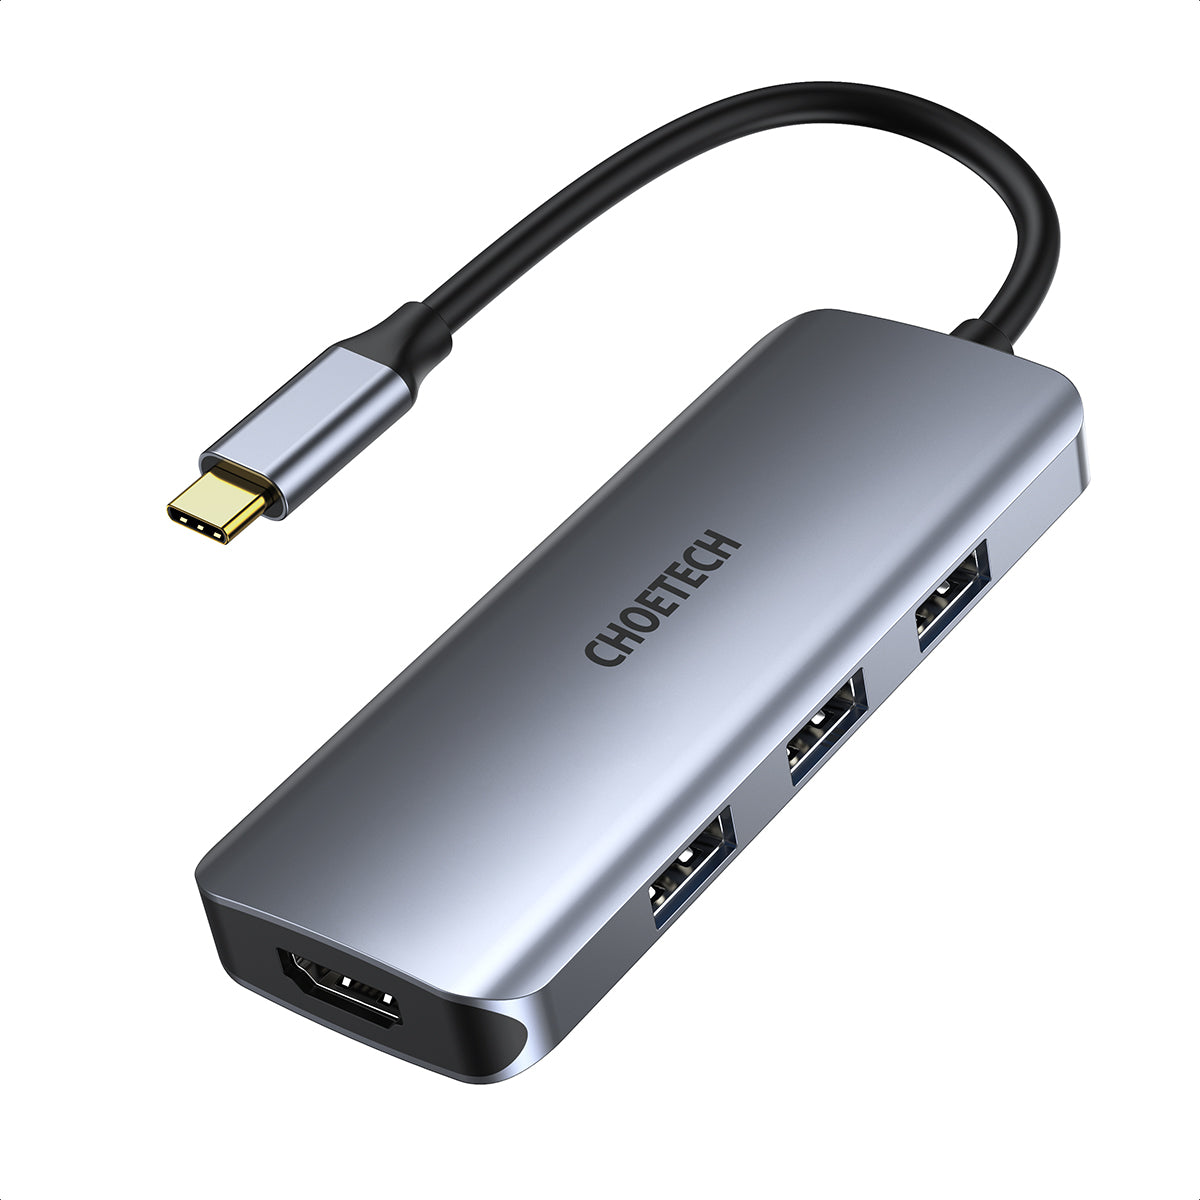 HUB-M19 CHOETECH Hub USB C, Adaptateur HDMI Type C 7 en 1 avec PD 100W, HDMI 4K, 3 ports USB 3.0, Lecteur de Carte SD/TF pour iPad Pro 2020/2018, MacBook Pro/Air 2018-2020, Galaxy Note 10 / S20 / S10, Huawei Compagnon 30